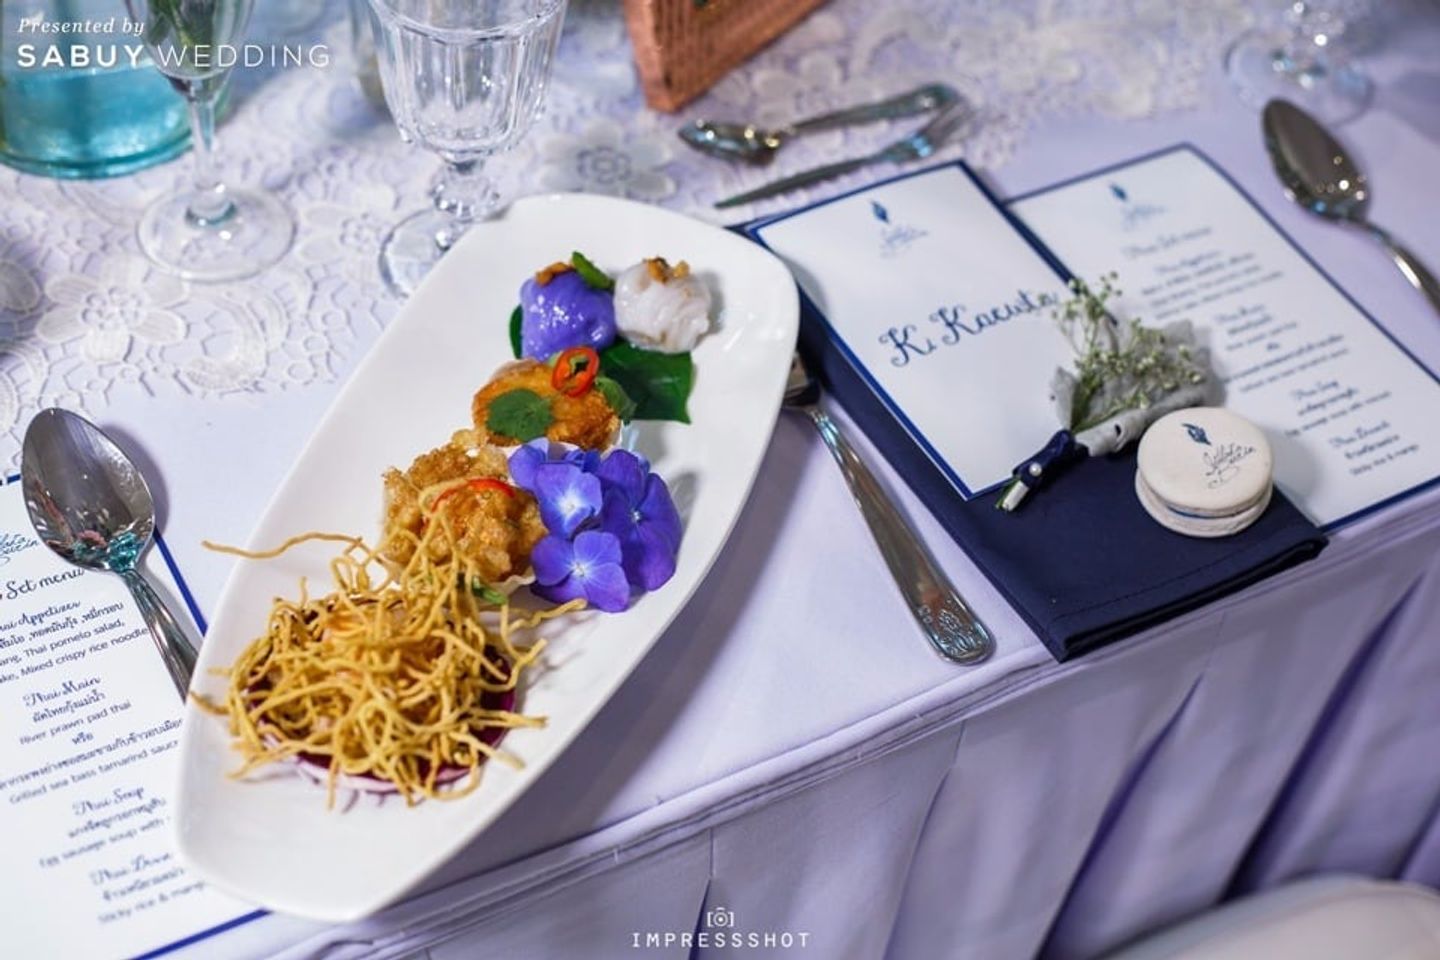 ค็อกเทล รีวิวงานแต่งสวยหรูด้วย Long table หวานซึ้งสื่อรักดอกลาเวนเดอร์ @Bangkok Garden Studio